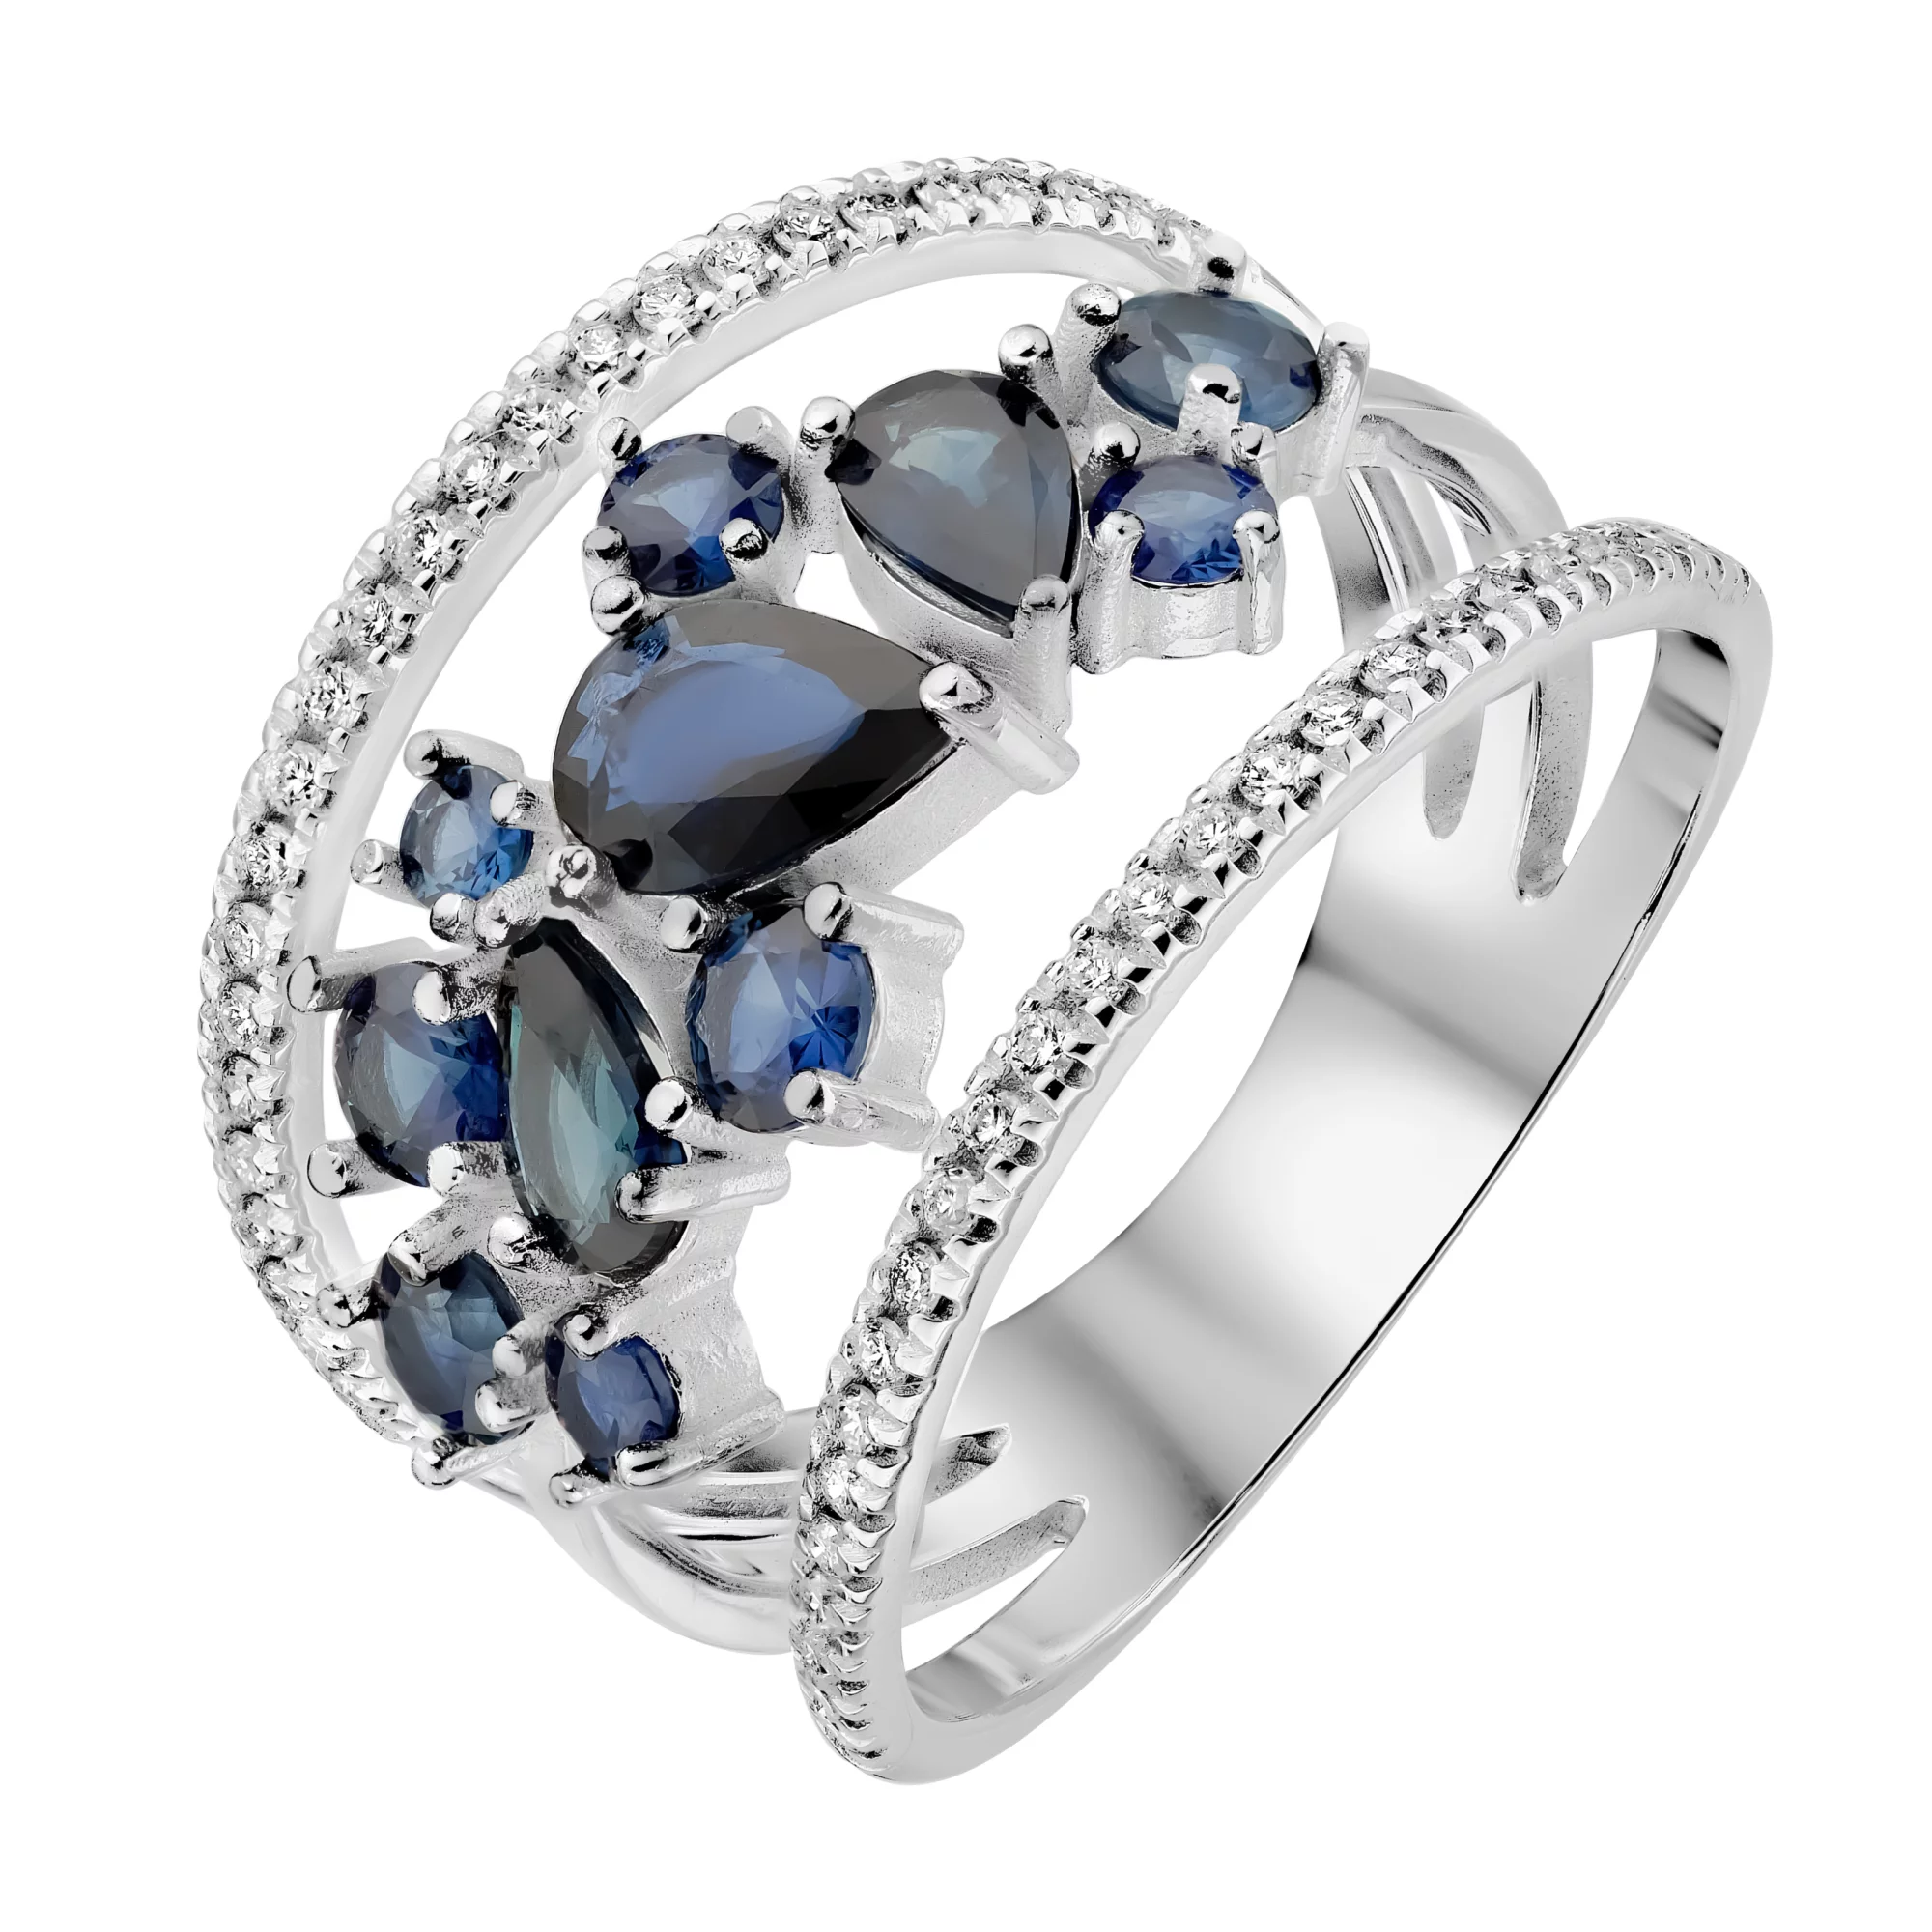 Тройное кольцо в белом золоте с бриллиантами и сапфирами - 1728749 – изображение 1